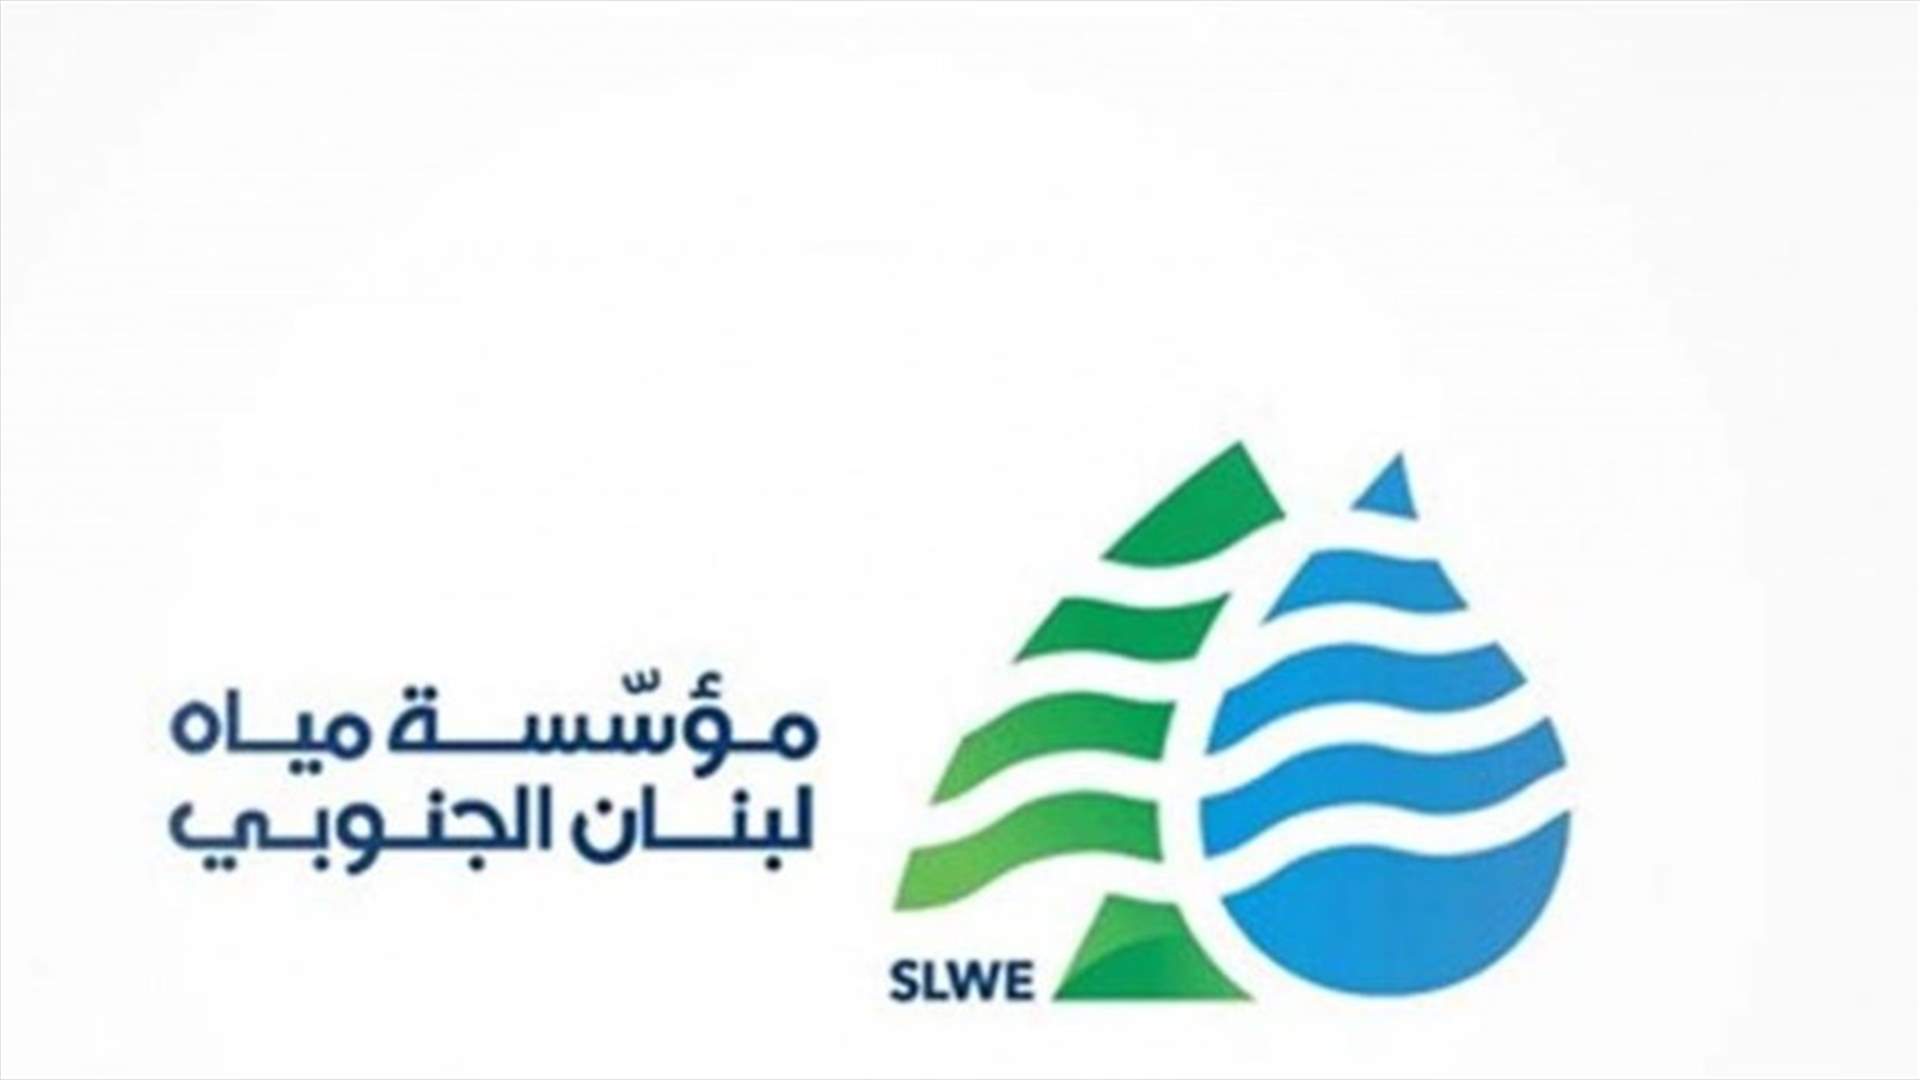 محطات مؤسسة مياه لبنان الجنوبي تعاود التغذية بالمياه بعد ربطها مؤقتًا بخط جزين الكهربائي